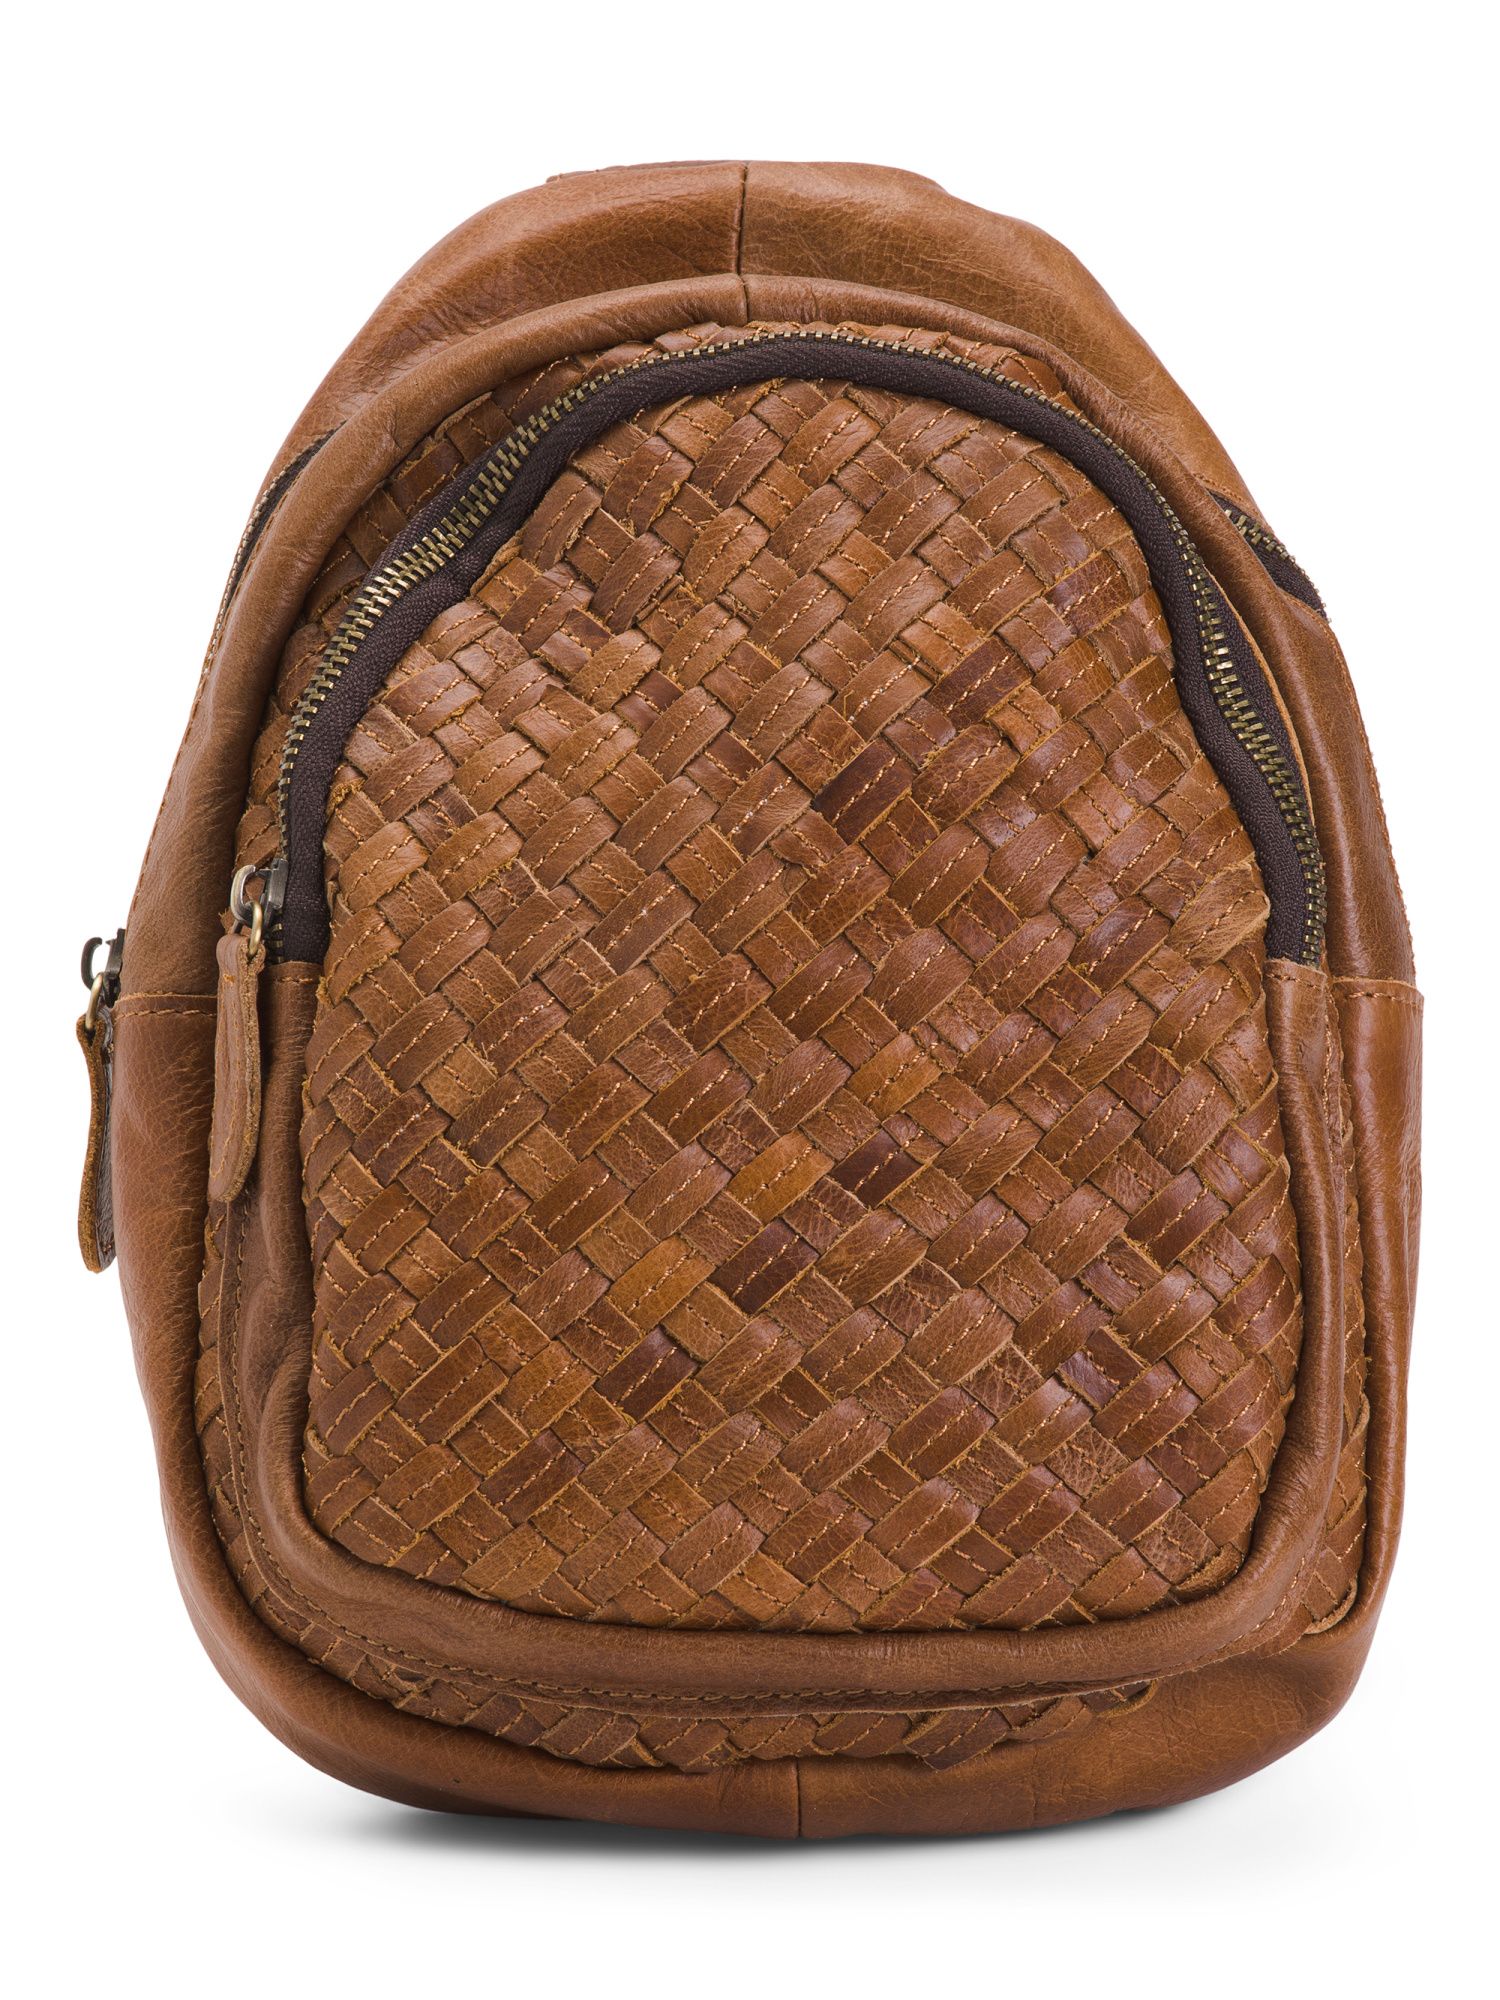 Woven Leather Sling Bag | Handbags | Marshalls | Marshalls